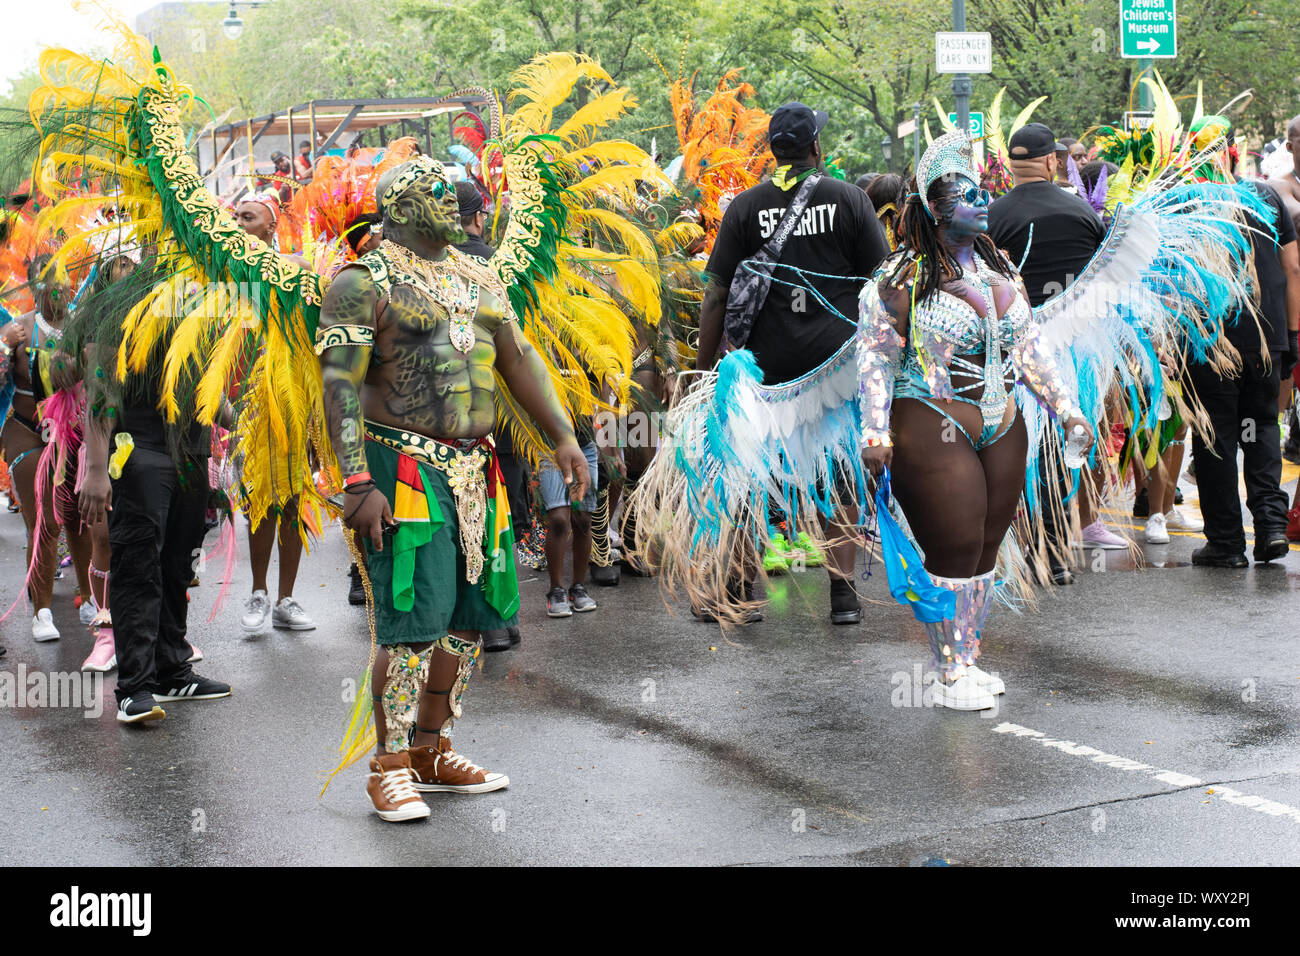 Tanzend zu lauter Musik laufen Teilnehmer der West Indian Day Parade di New York City Un den Zuschauern vorbei und animieren diese. Foto Stock